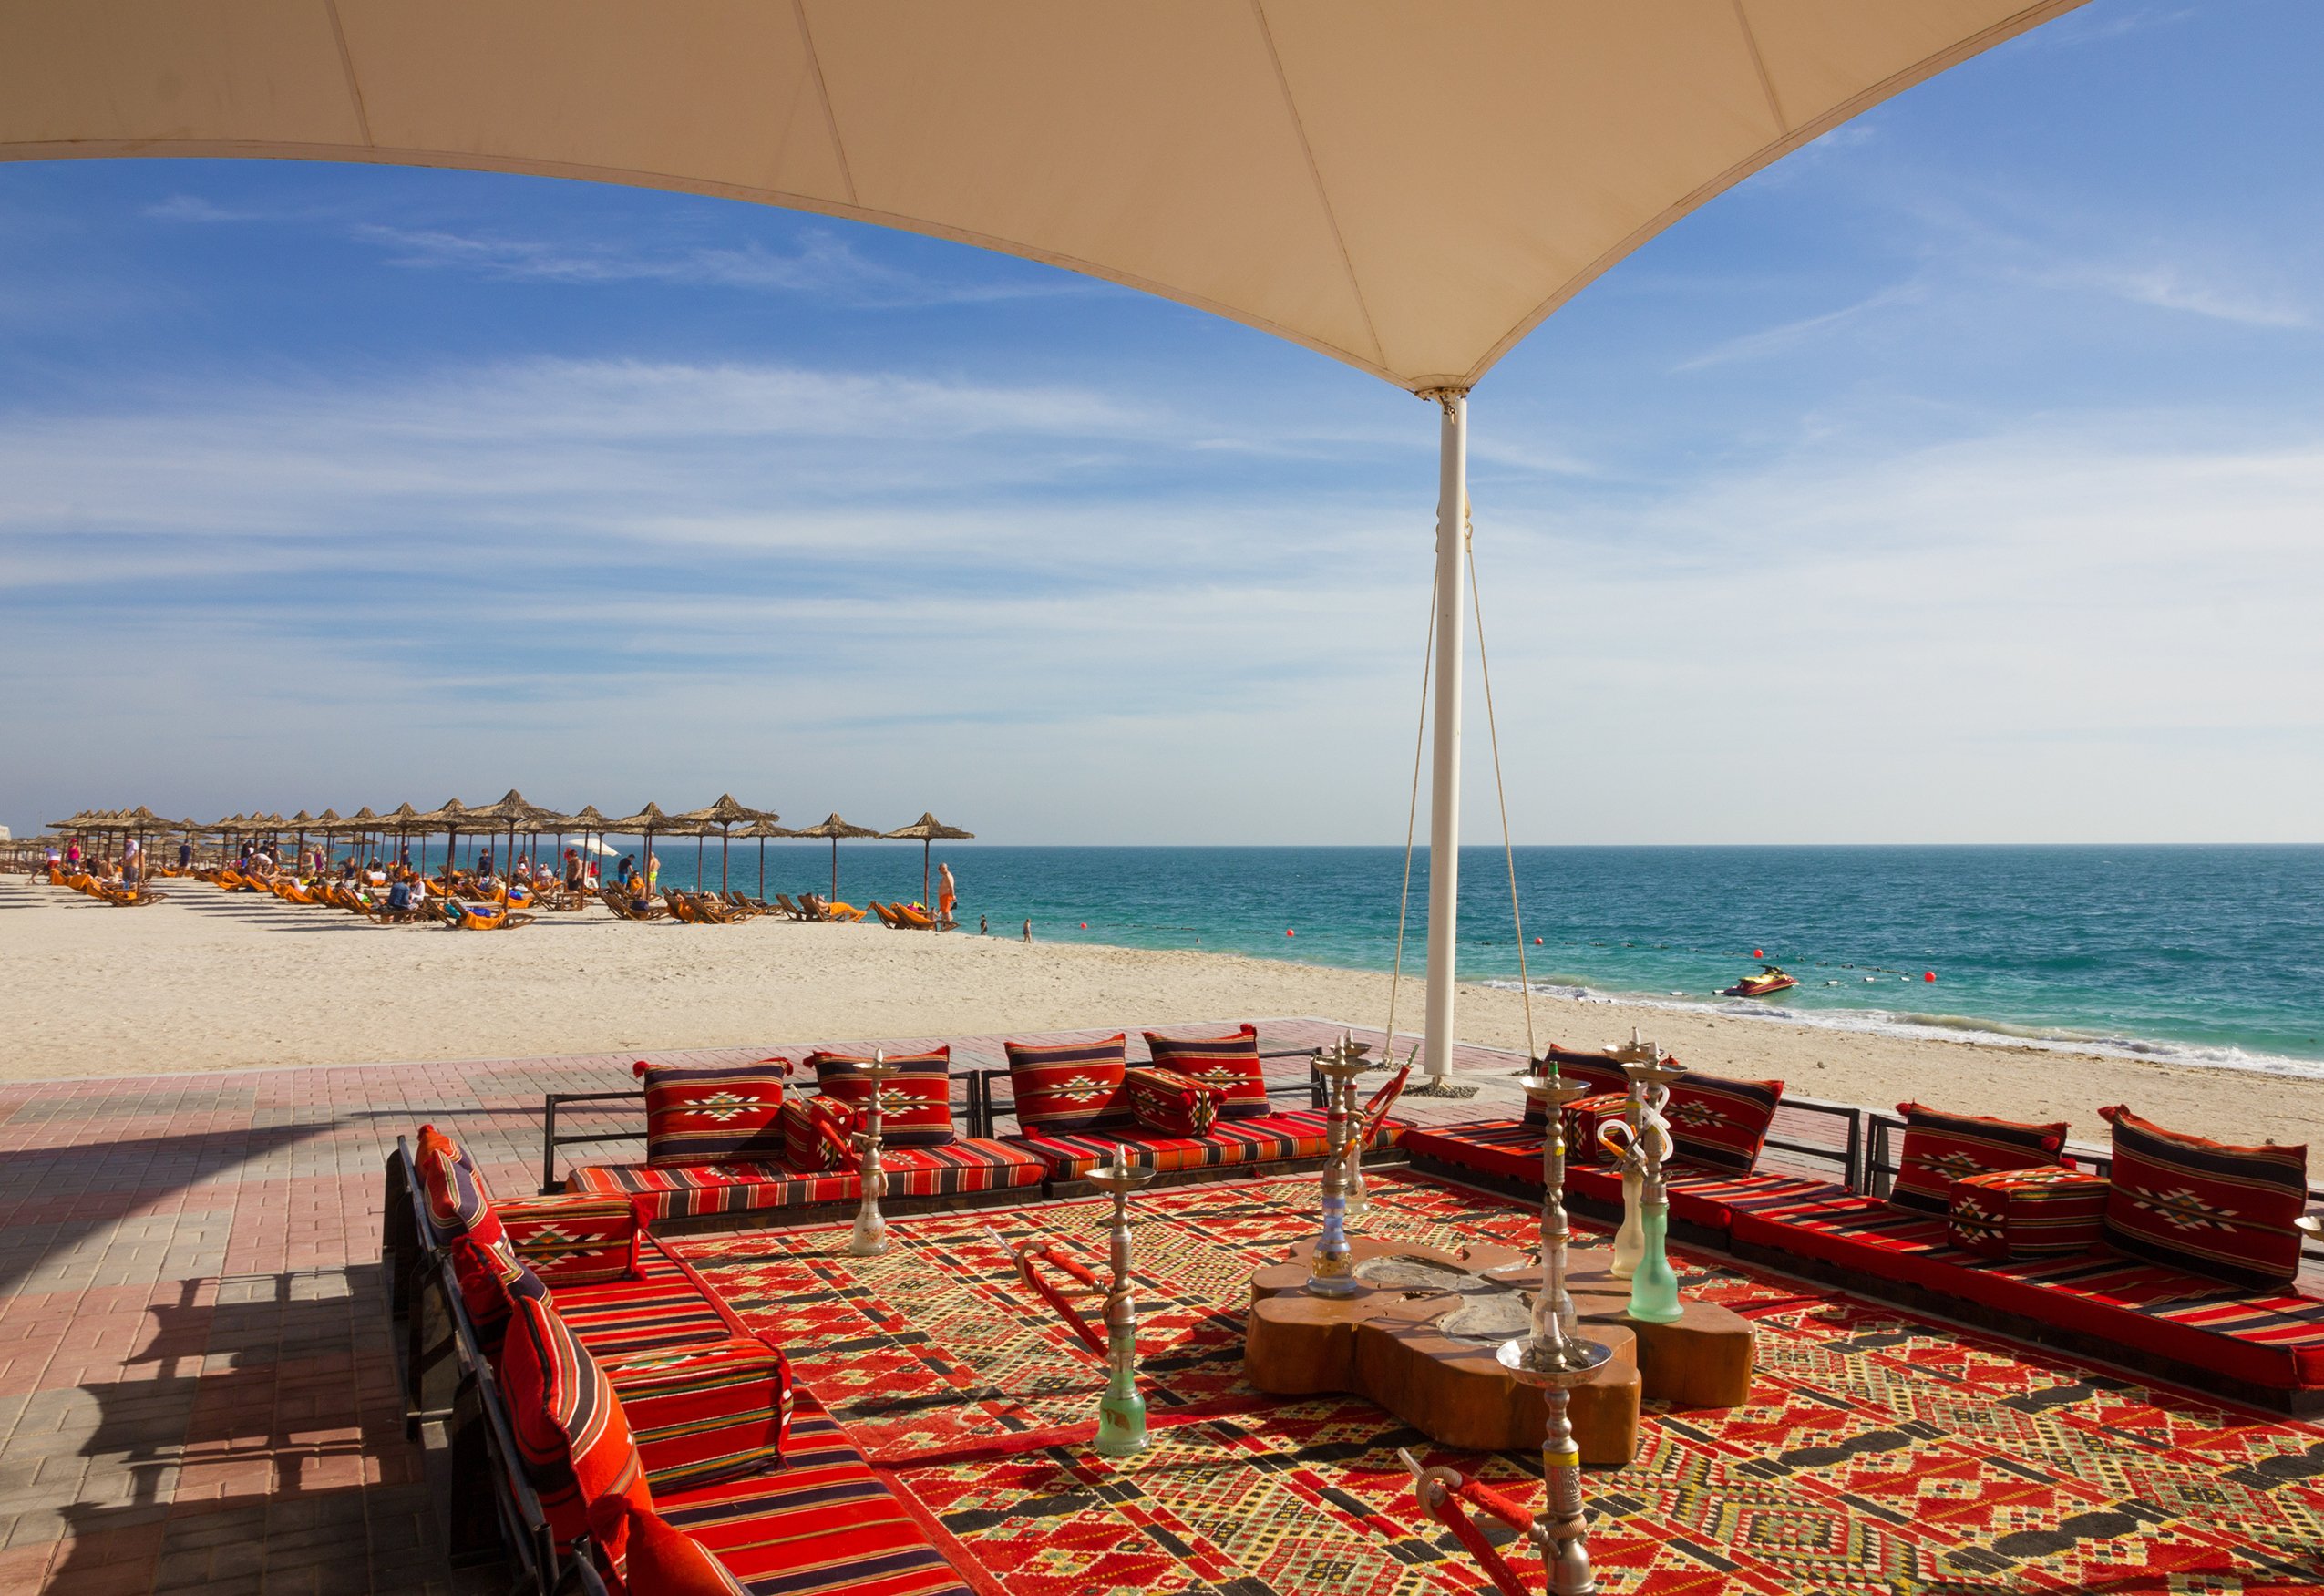 Abu Dhabi, UAE March 12, 2019: Beach on Sir Bani Yas island. Abu Dhabi Emirate. Hookah cafe